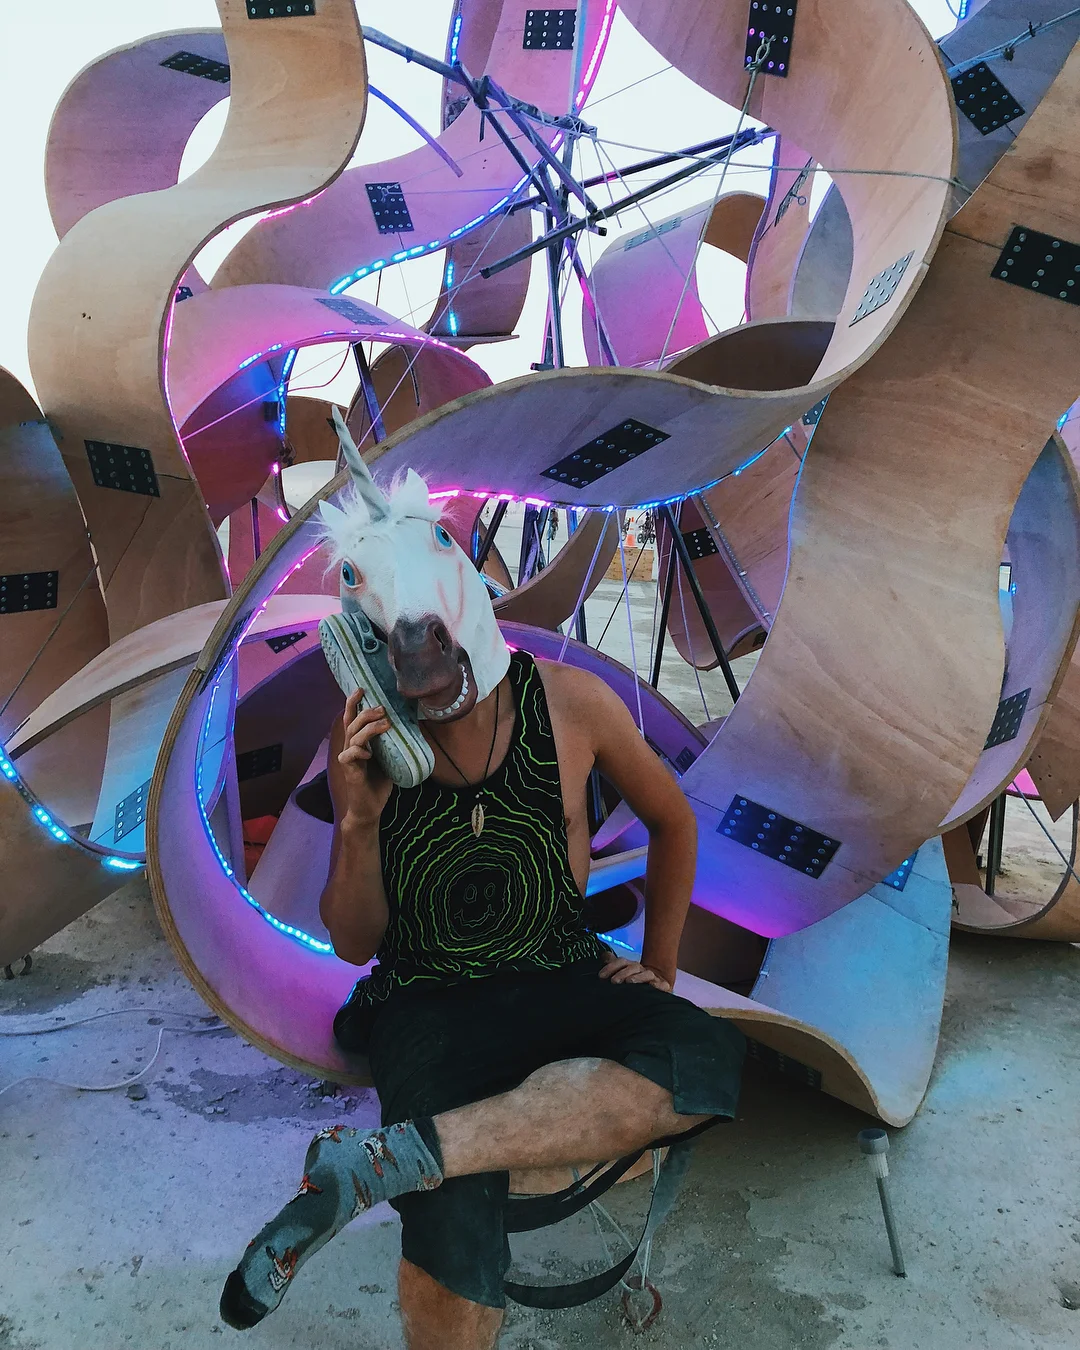 Полуголые тела, безумные костюмы и невероятные инсталляции фестиваля Burning Man-2018 - фото 400828